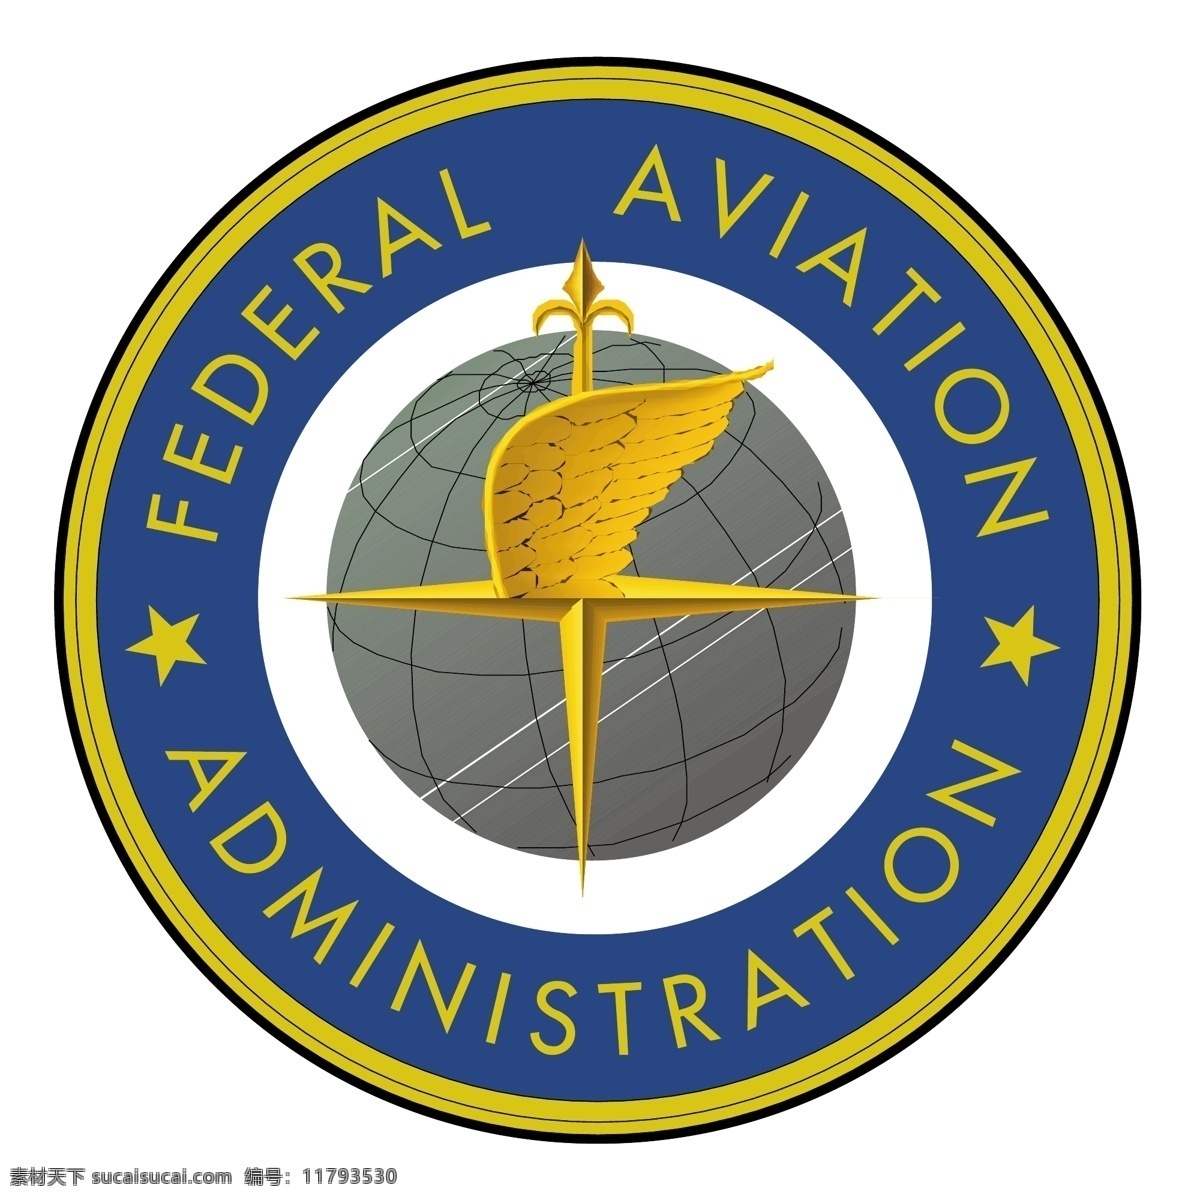 联邦 航空 管理局 自由 标志 标识 psd源文件 logo设计